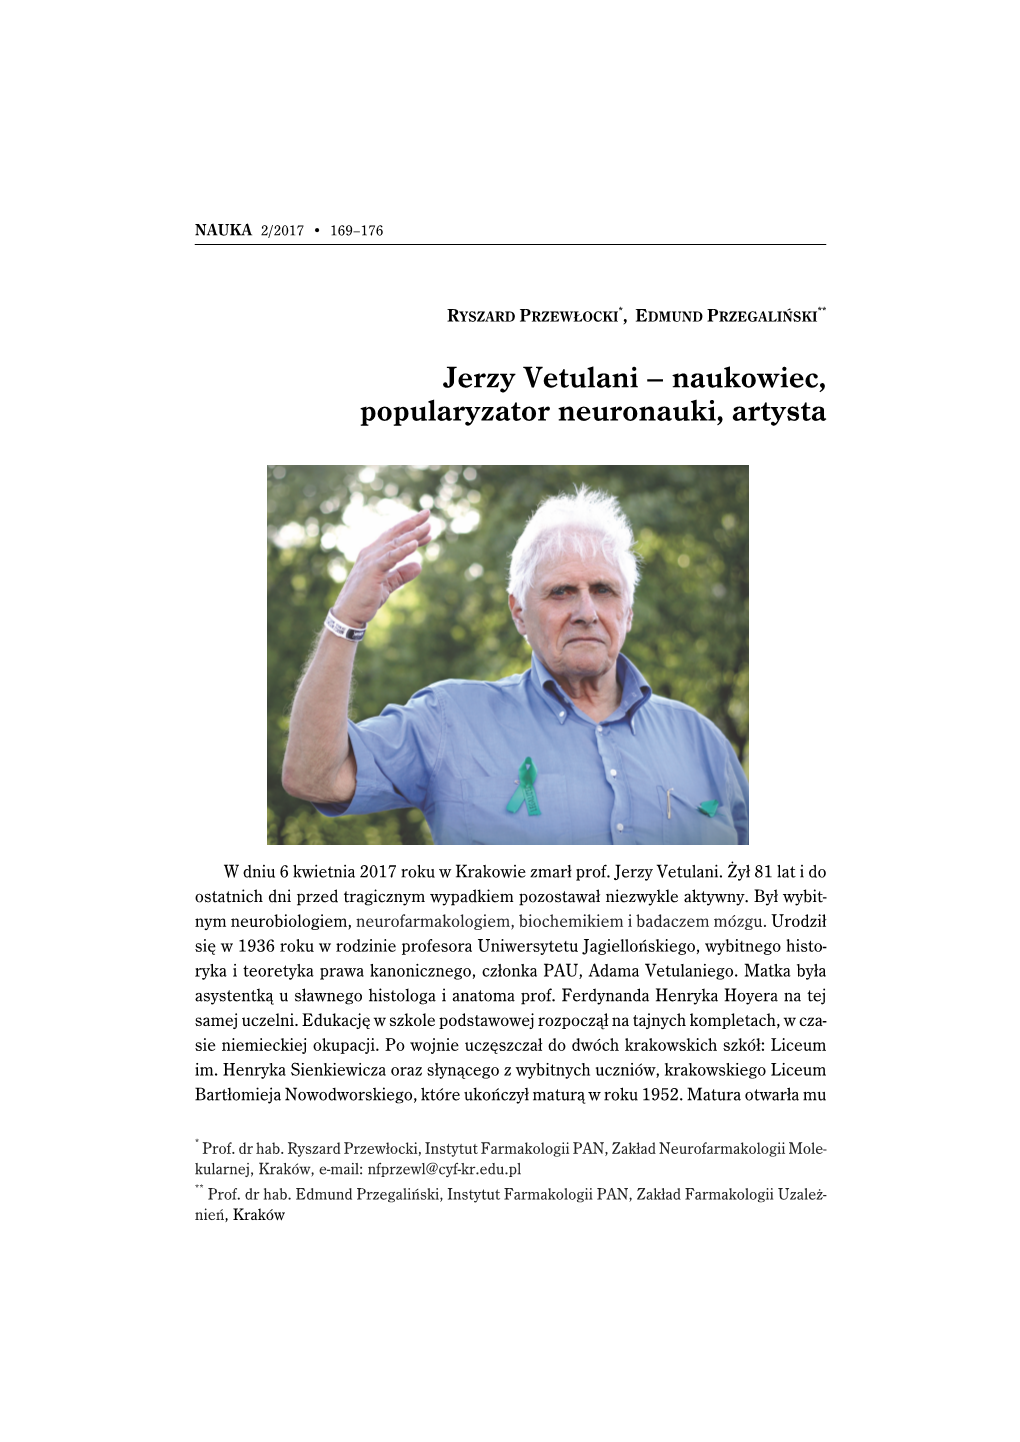 Jerzy Vetulani – Naukowiec, Popularyzator Neuronauki, Artysta